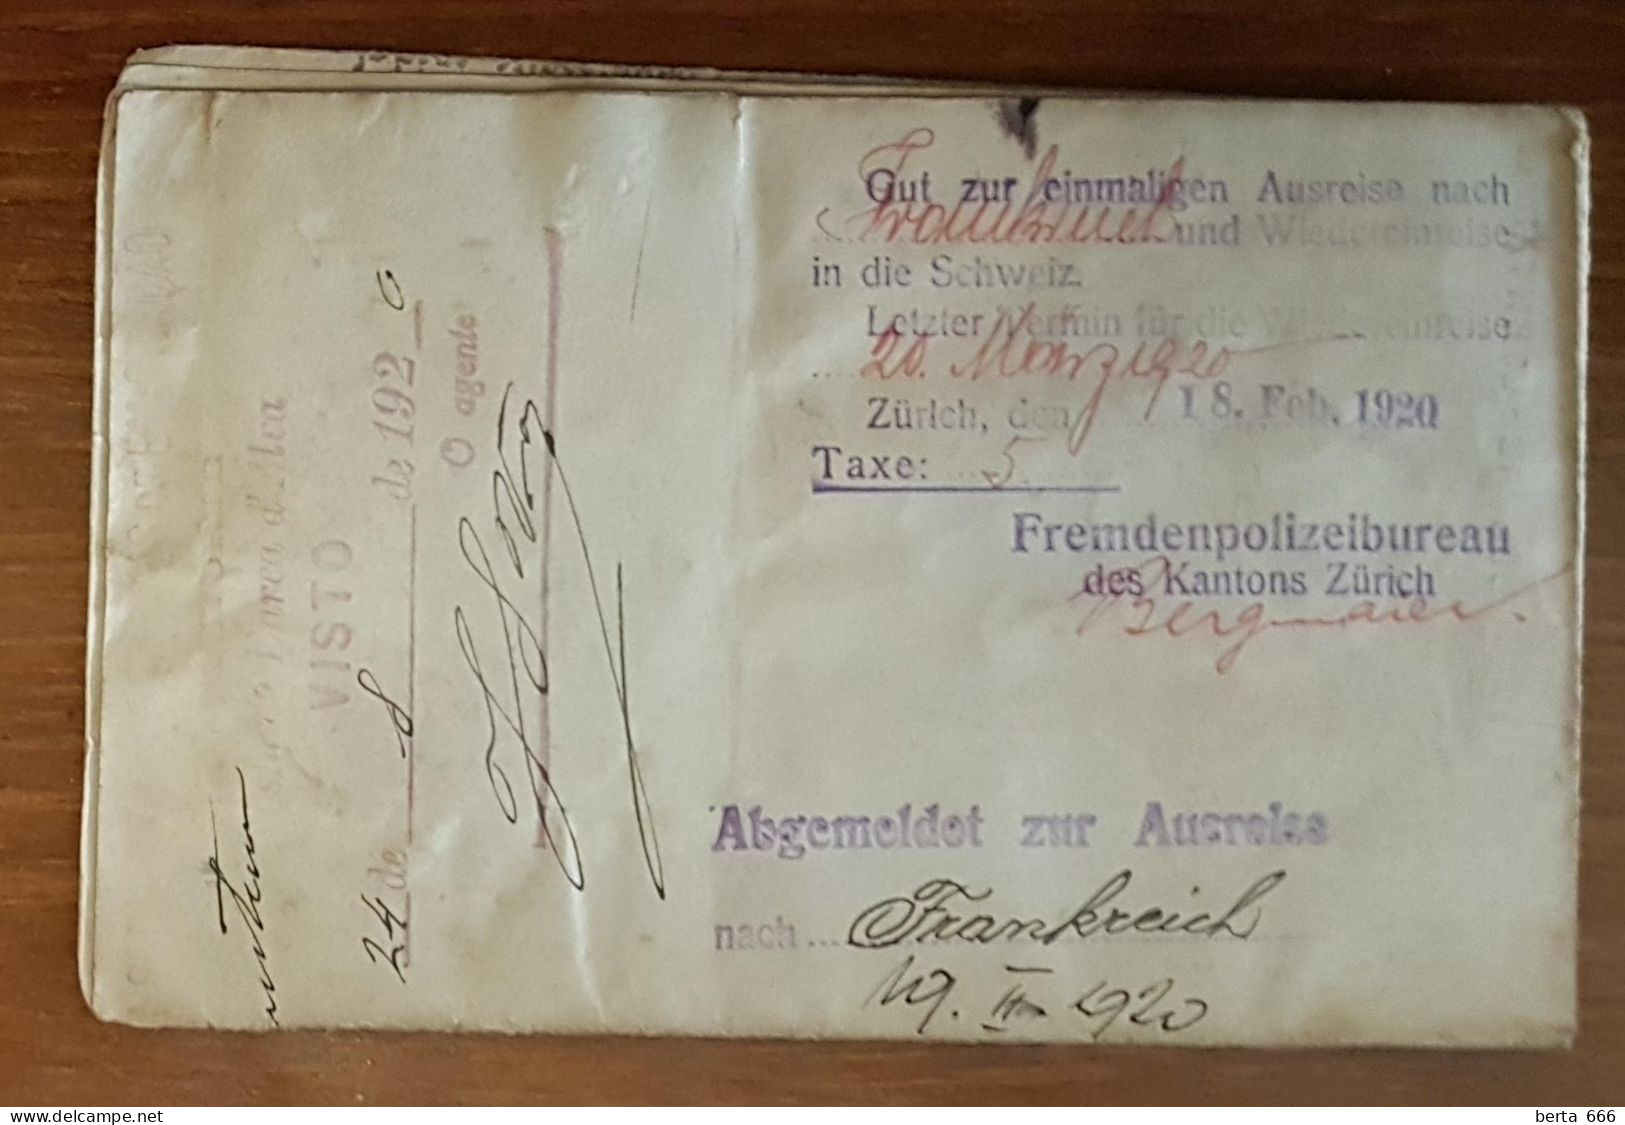 Passaporte * Consulado De Portugal Em Zurique * 1920 * Estampilha Fiscal Consulados * Passport * Passeport - Documents Historiques